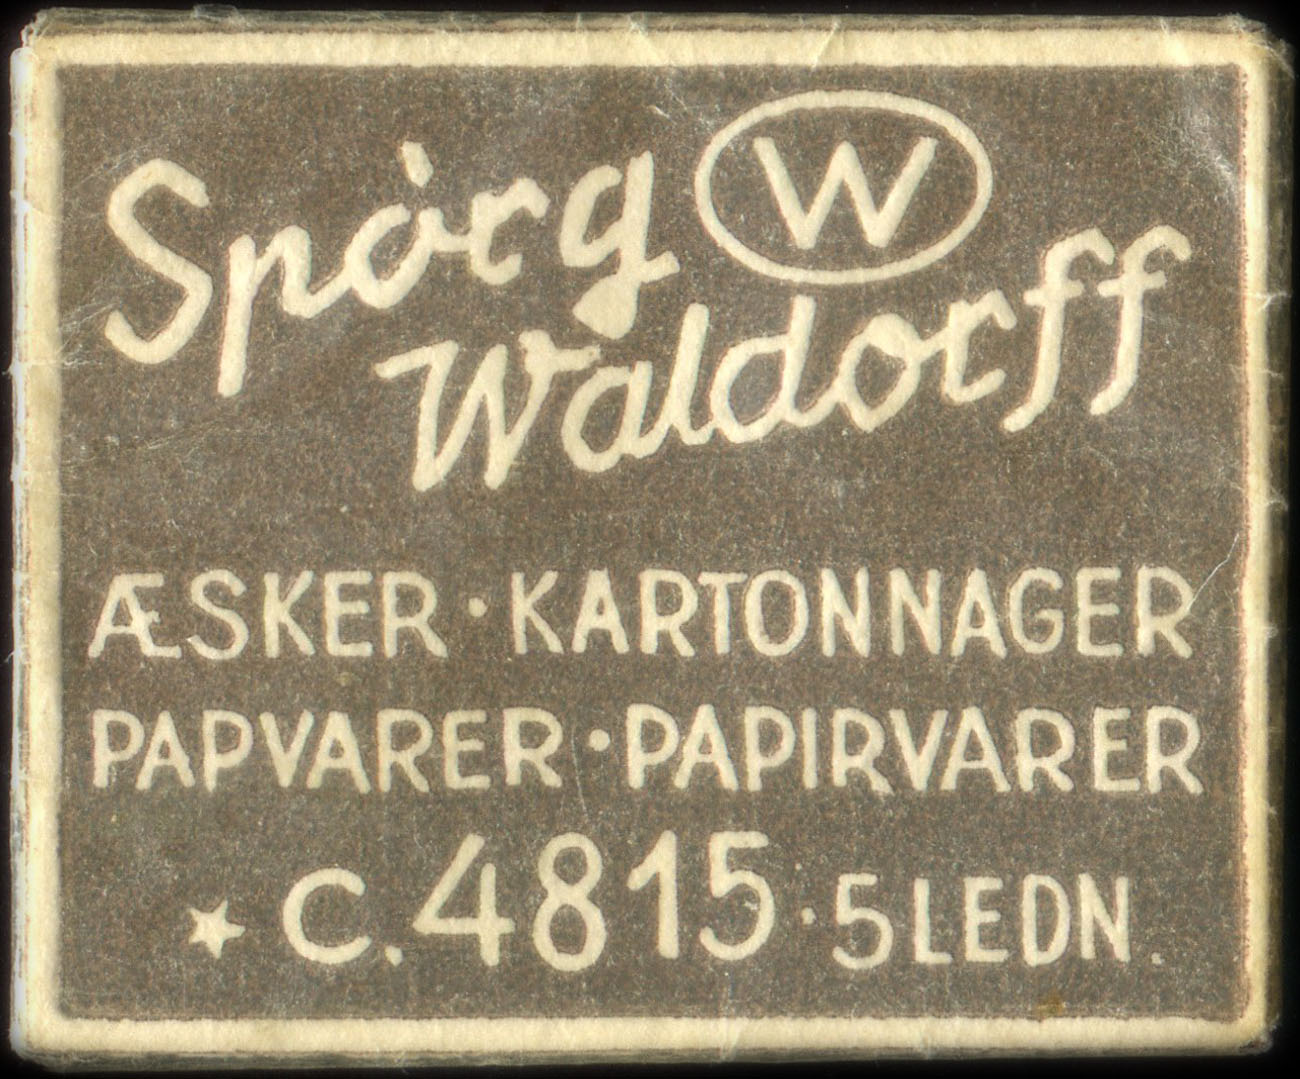 Timbre-monnaie Spòrg Waldorff - sker - Kartonnager - Papvarer - Papirvarer - C.4815. 5 Ledn - fond marron - Danemark